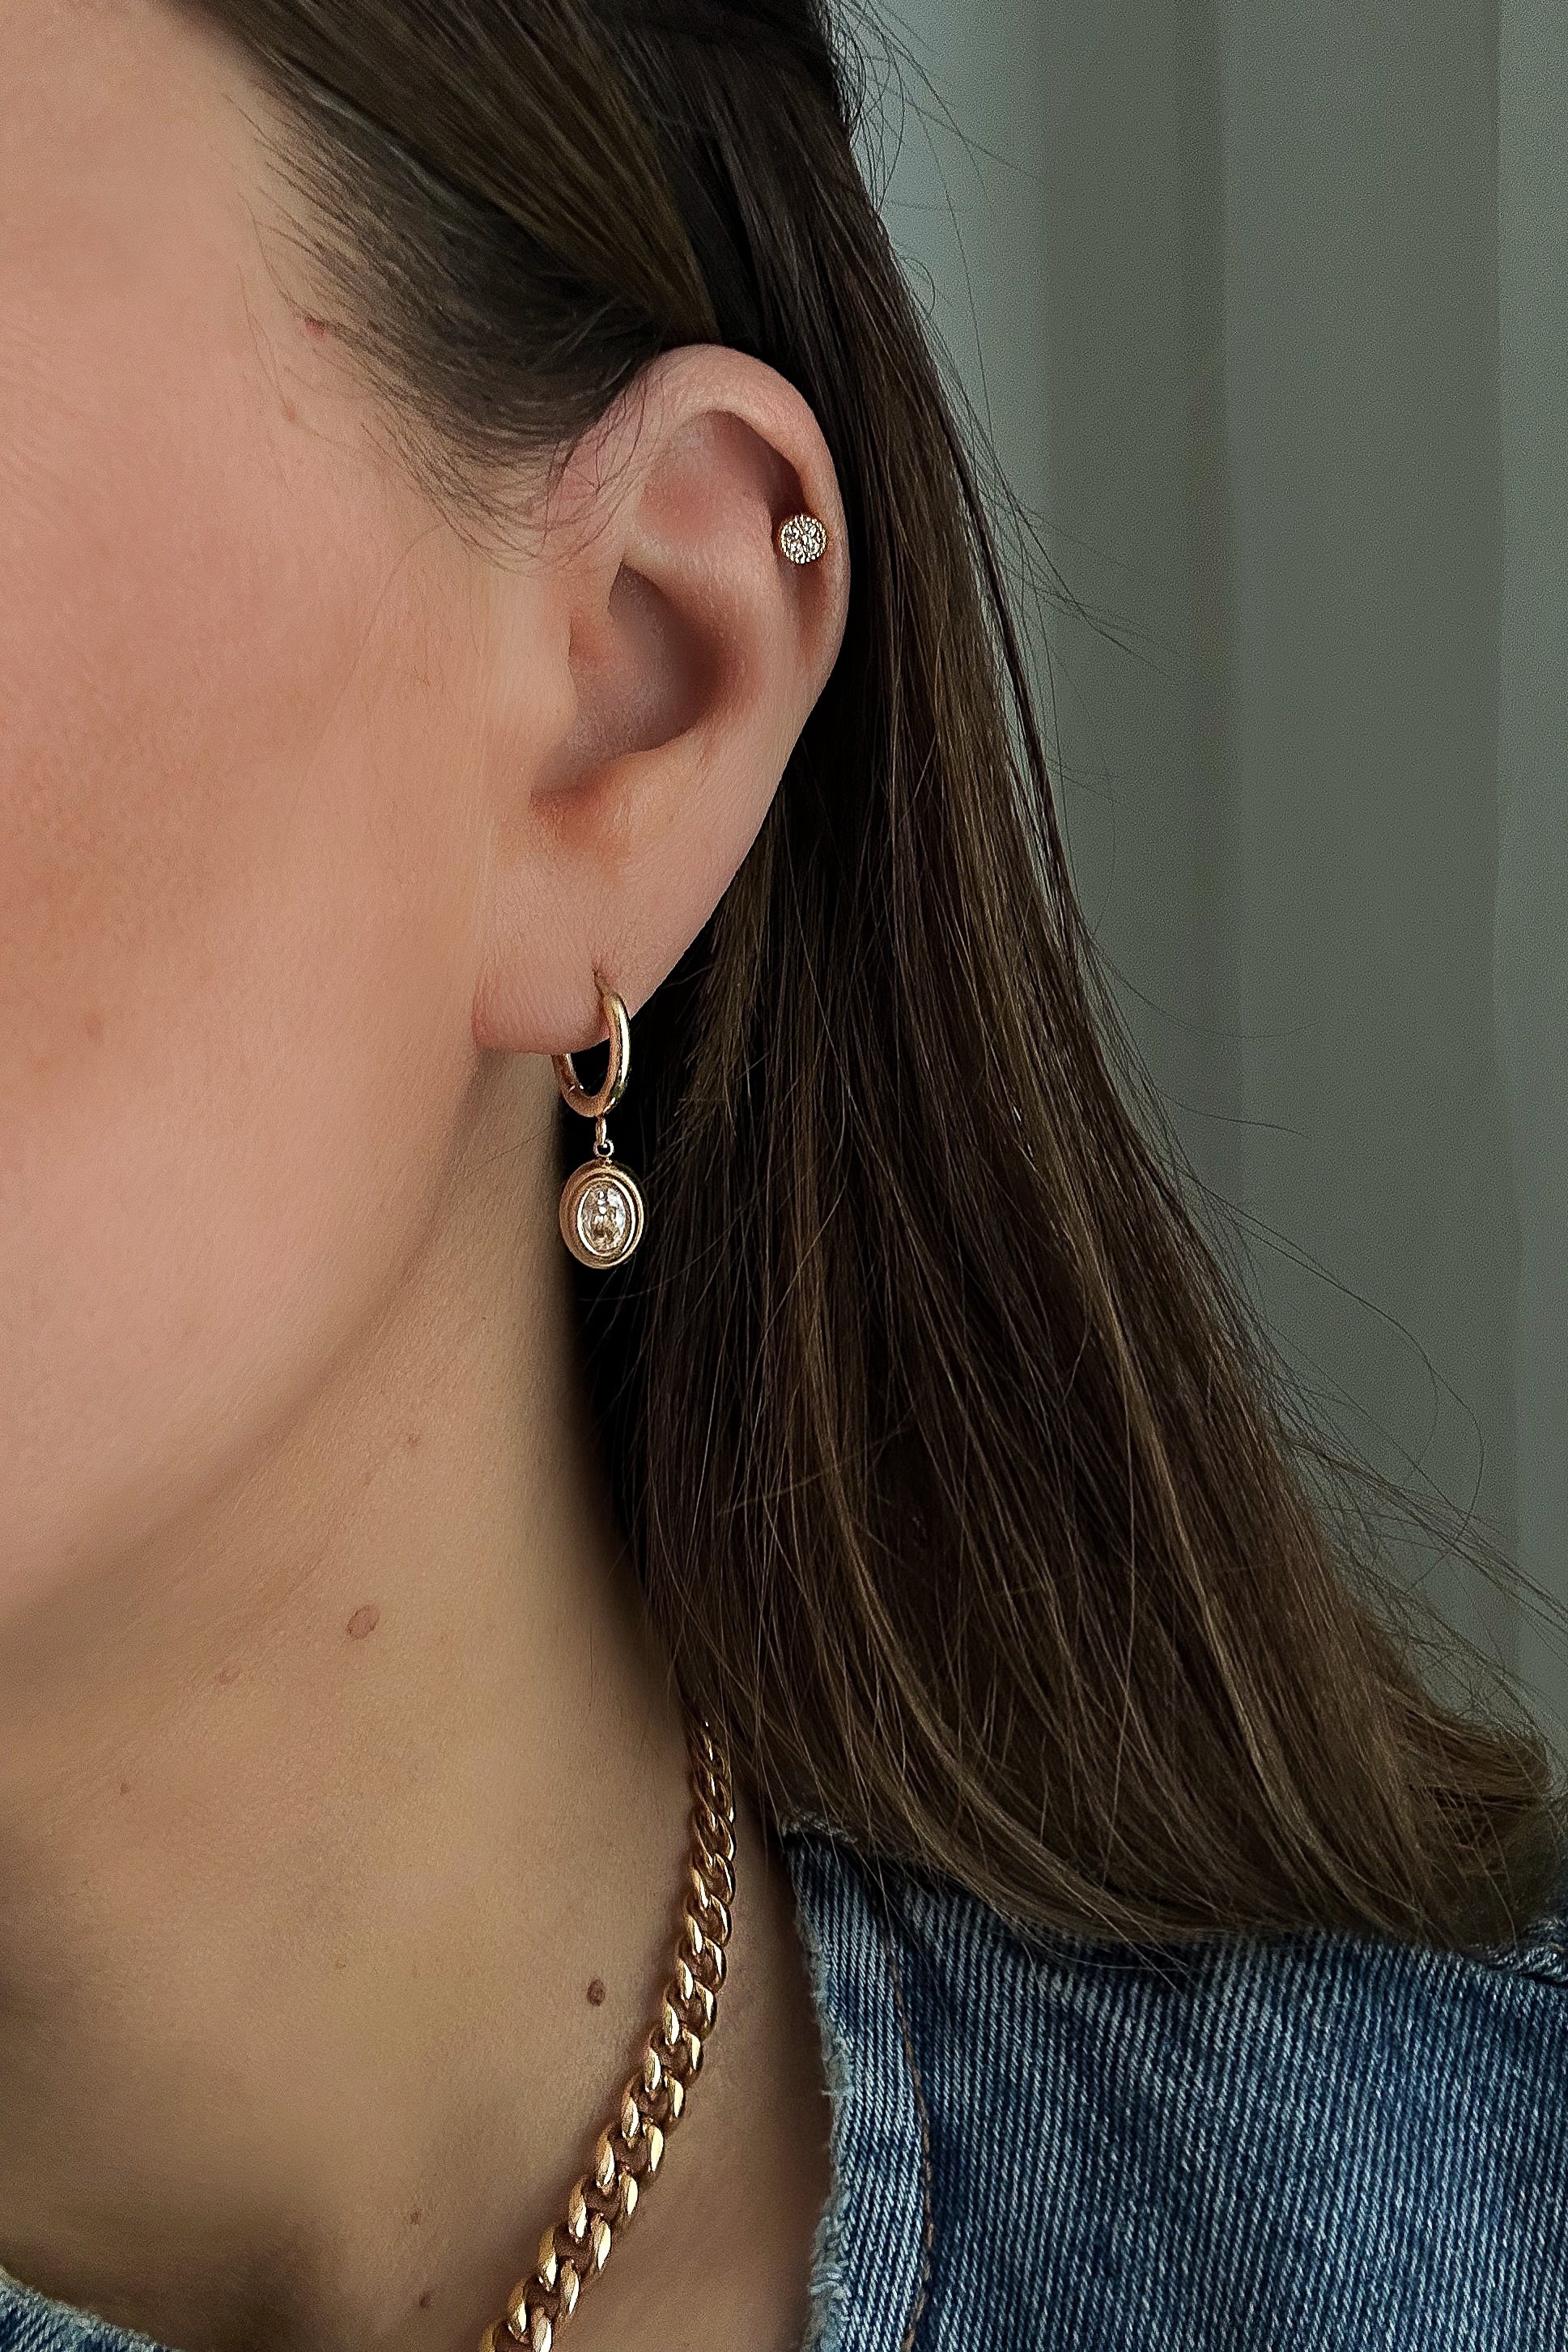 Sophie Earrings - Boutique Minimaliste has waterproof, durable, elegant and vintage inspired jewelry